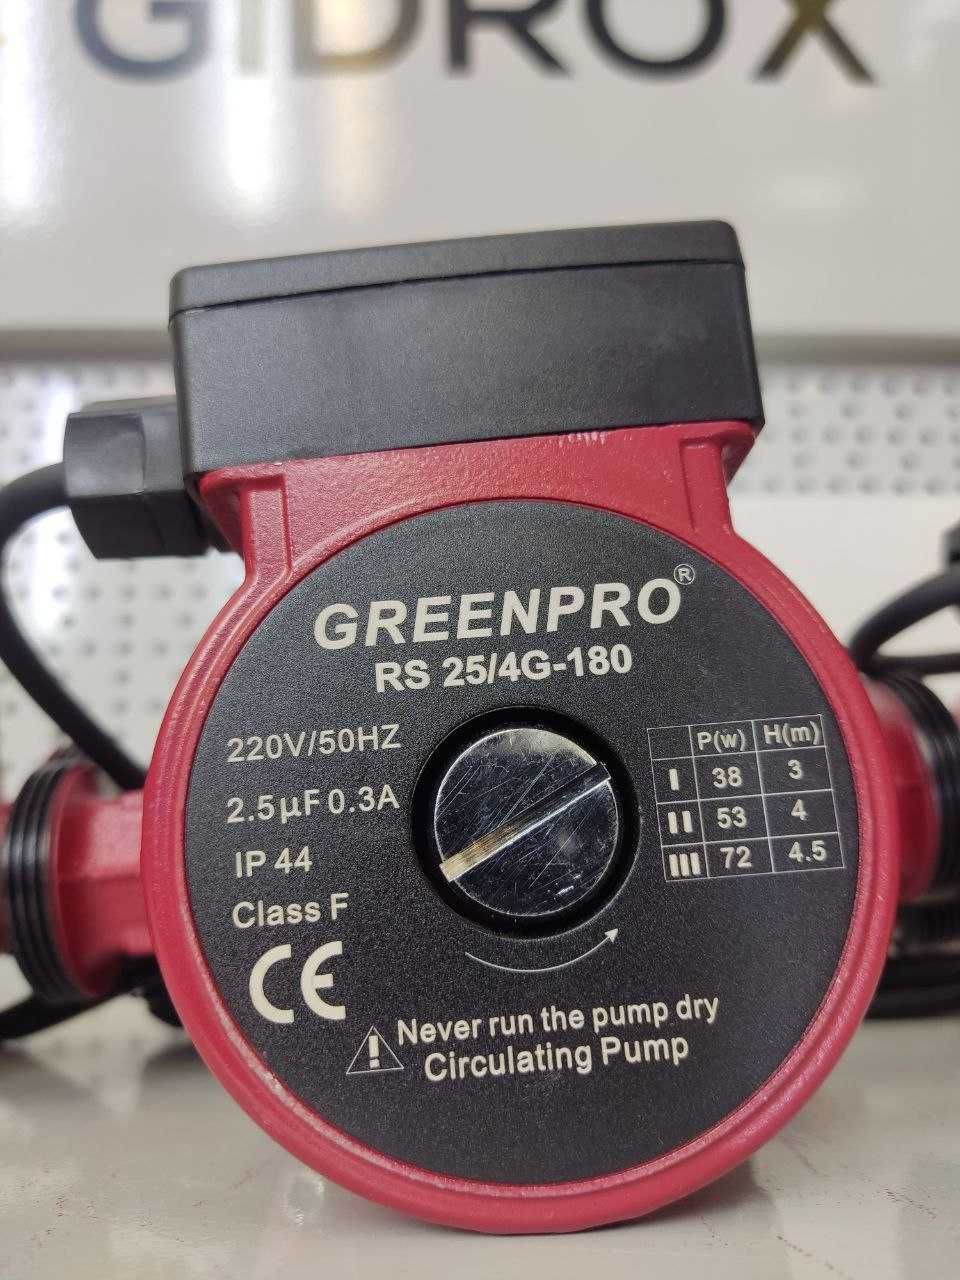 Циркуляционные насосы Greenpro 2 год гарантии Официальный дилер